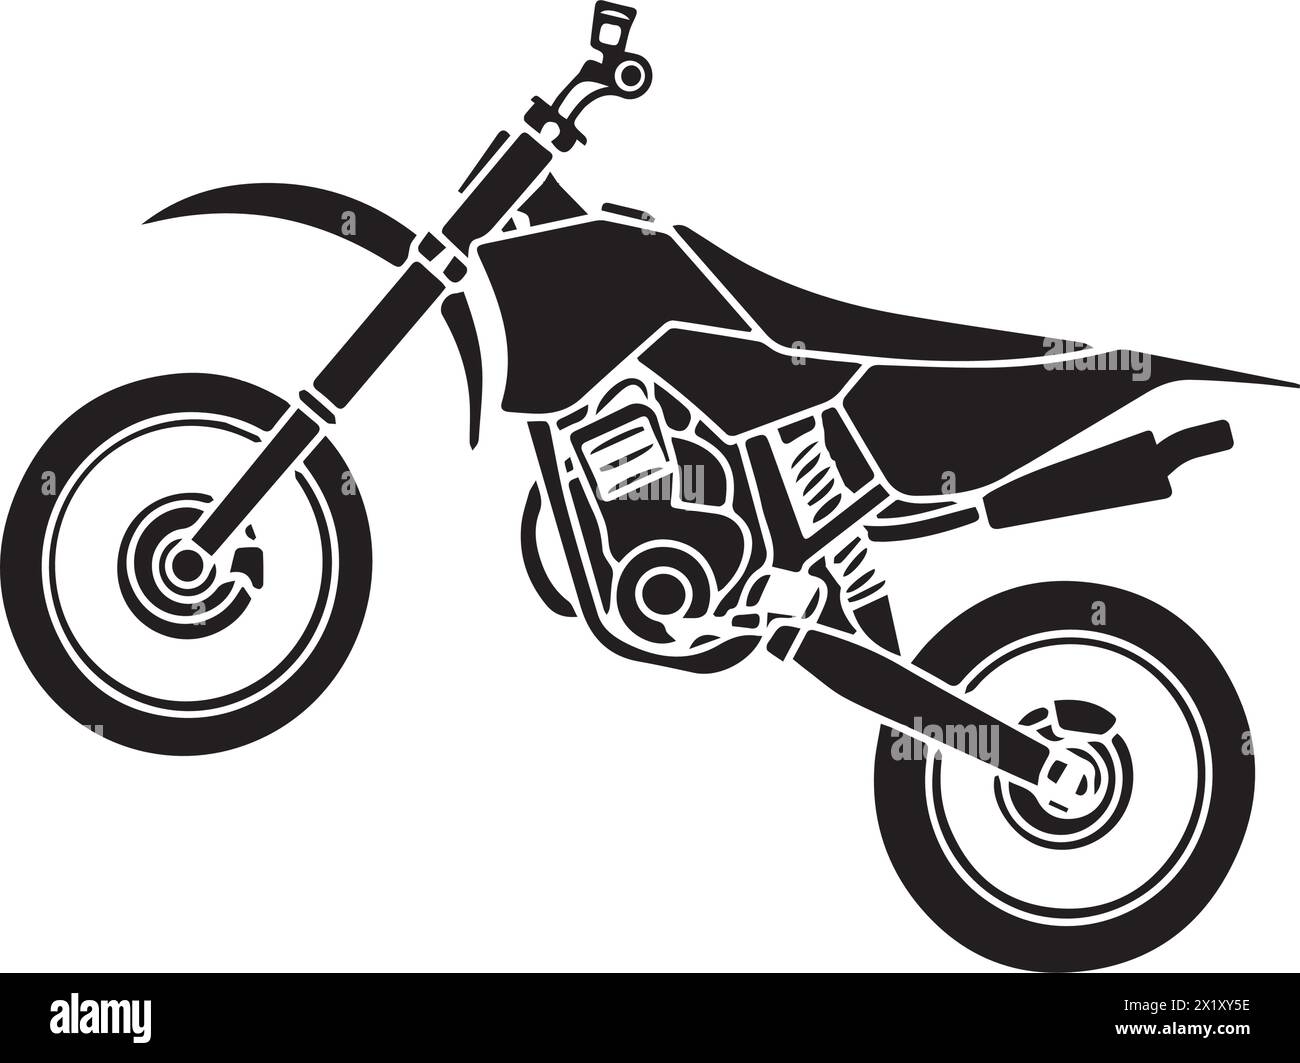 Motocross-Symbol-Vektor-Illustration einfaches Design Stock Vektor